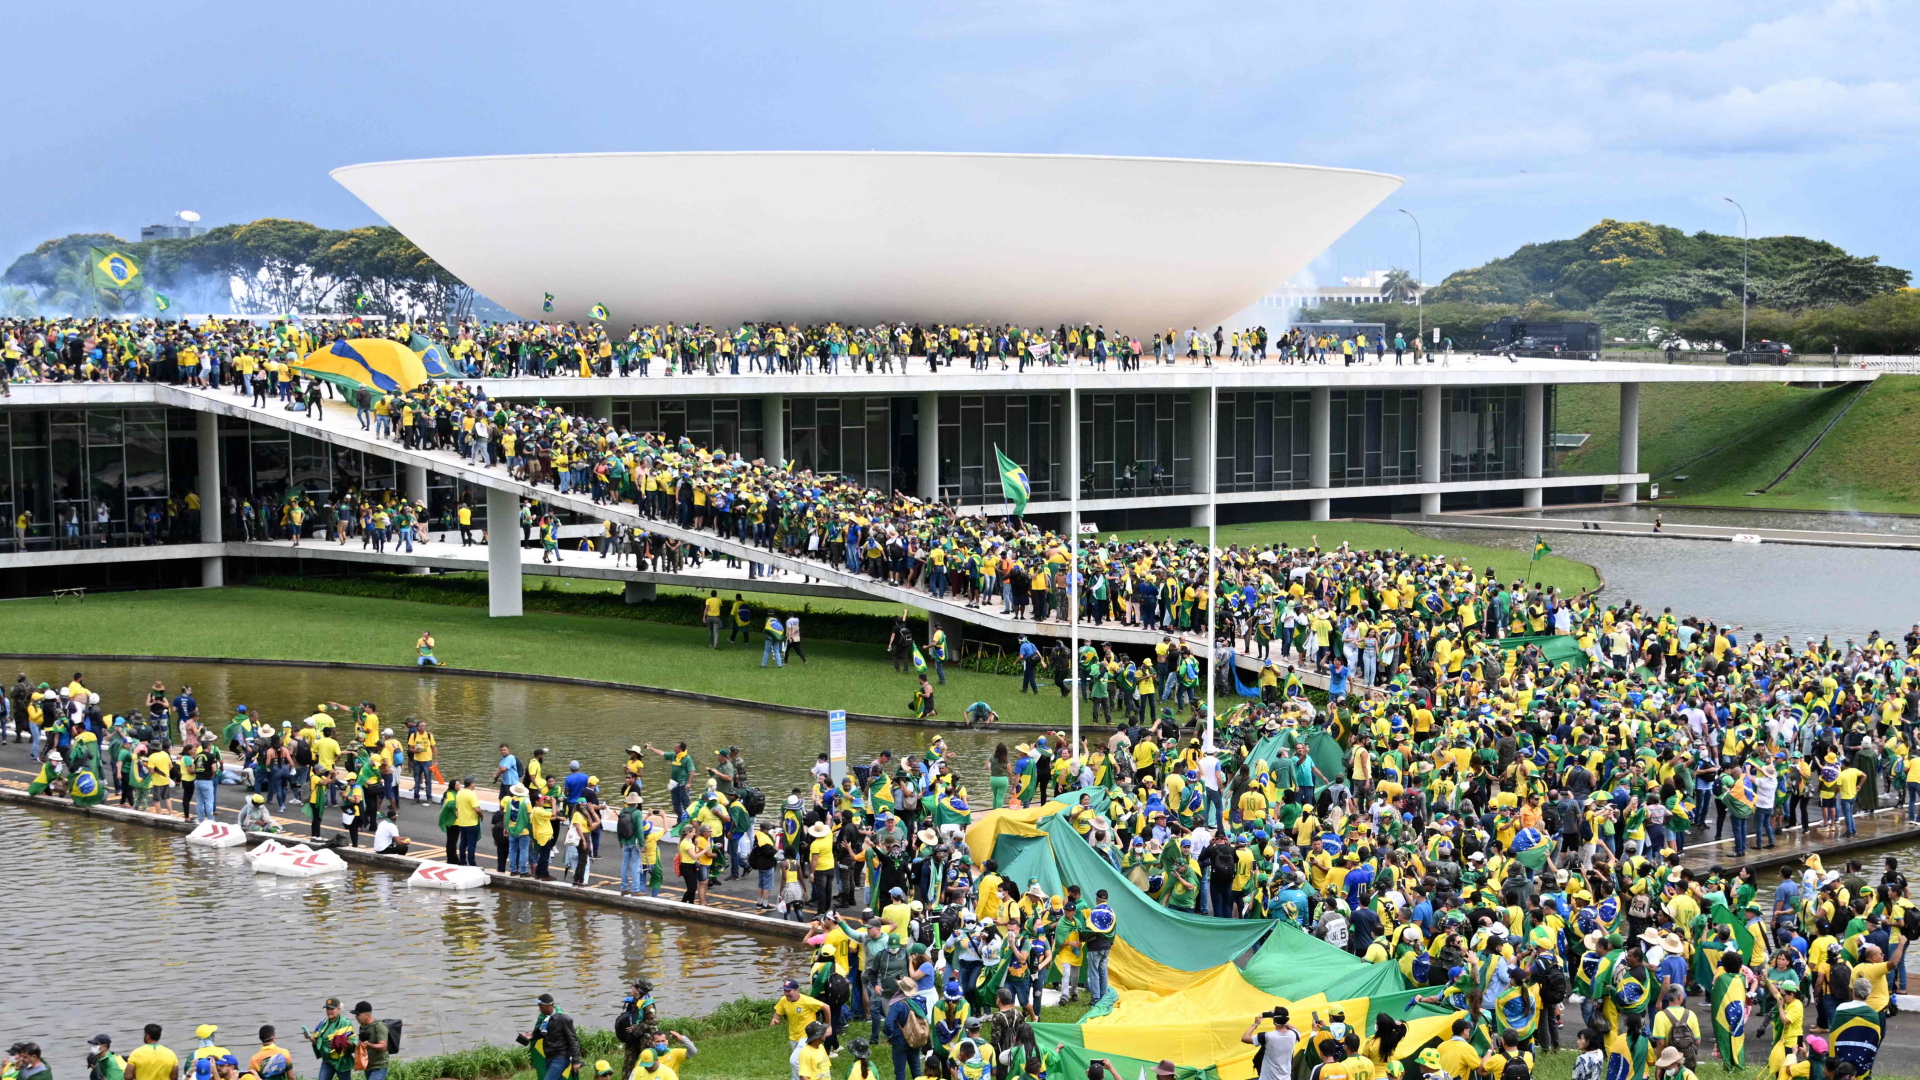 Mutmaßliche Anhänger von Ex-Präsident Bolsonaro befinden sich vor dem brasilianischen Parlament und auf dem Dach des Gebäudes. | AFP